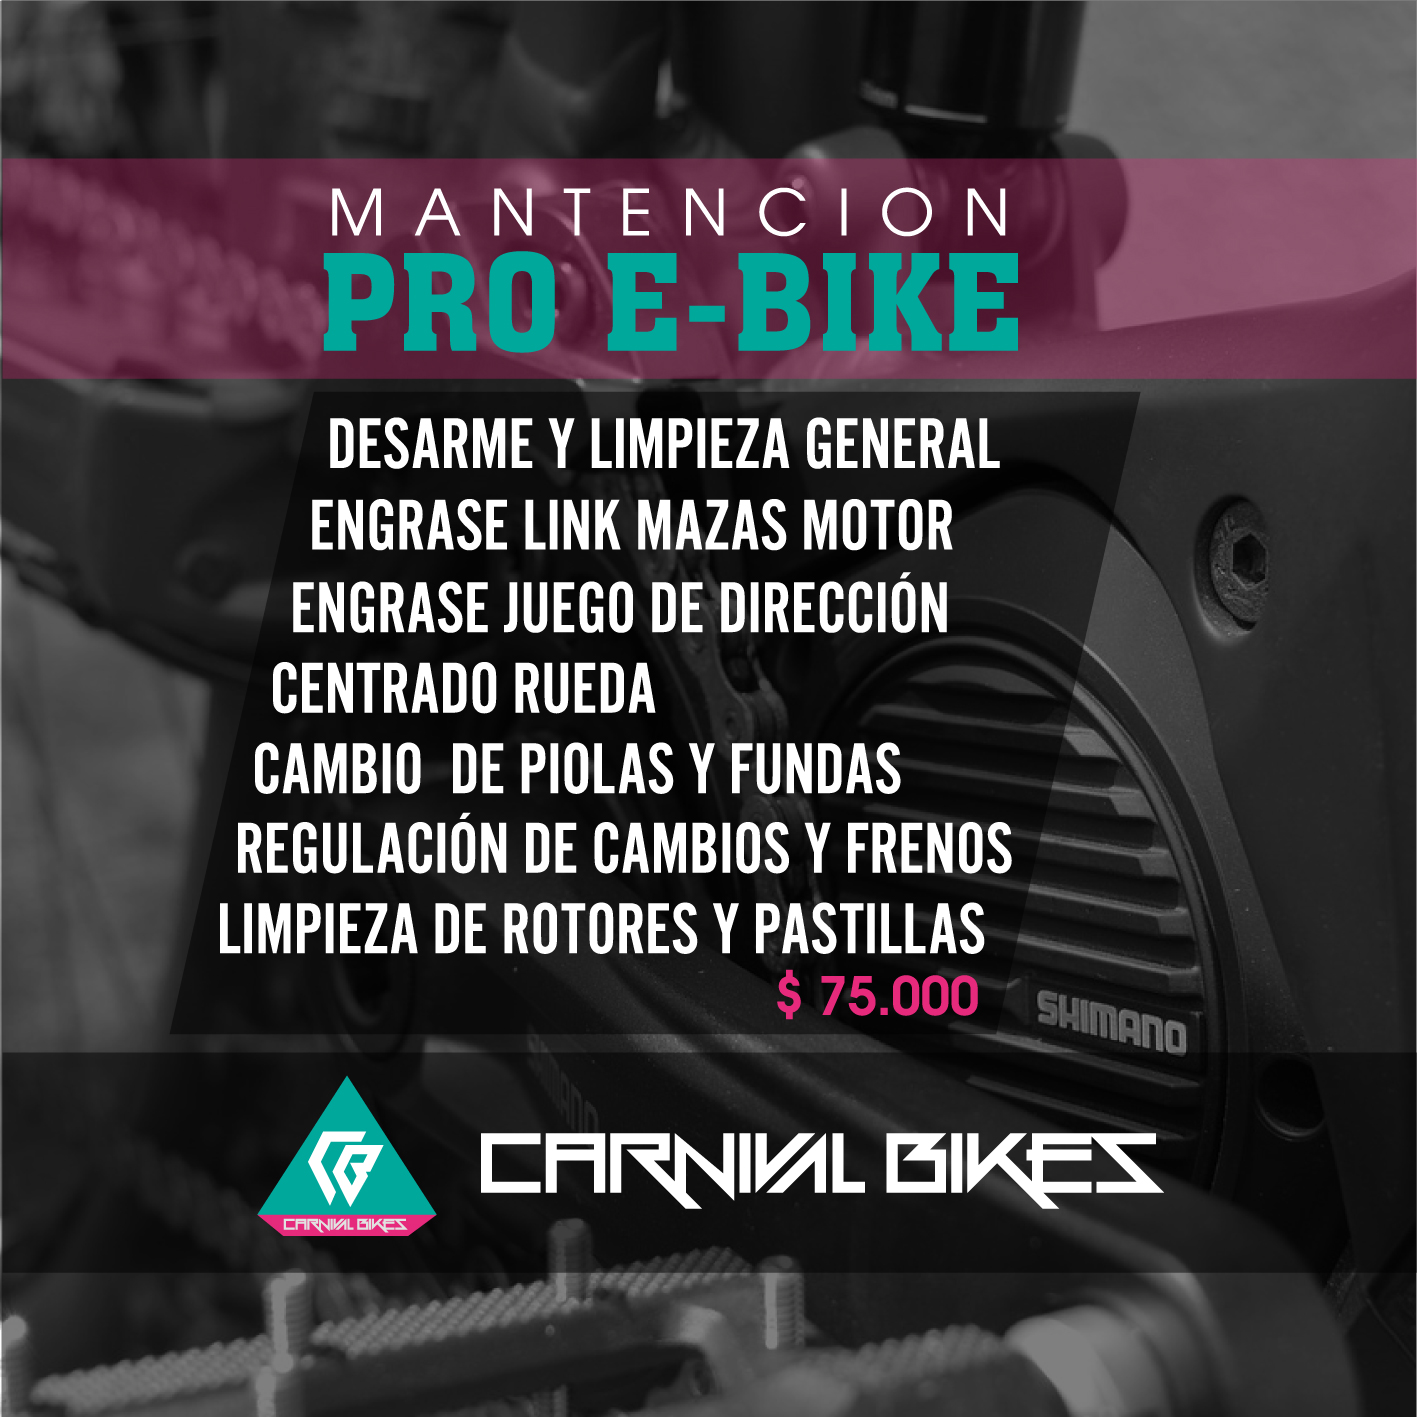 carnivalbikes-mantencion-Pro-E-Bike-bicicleta-electrica-full-desarme-y-limpieza-general-engrase-link-maza-motor-regulacion-cambio-y-frenos-cambio-piolas-y-fundas